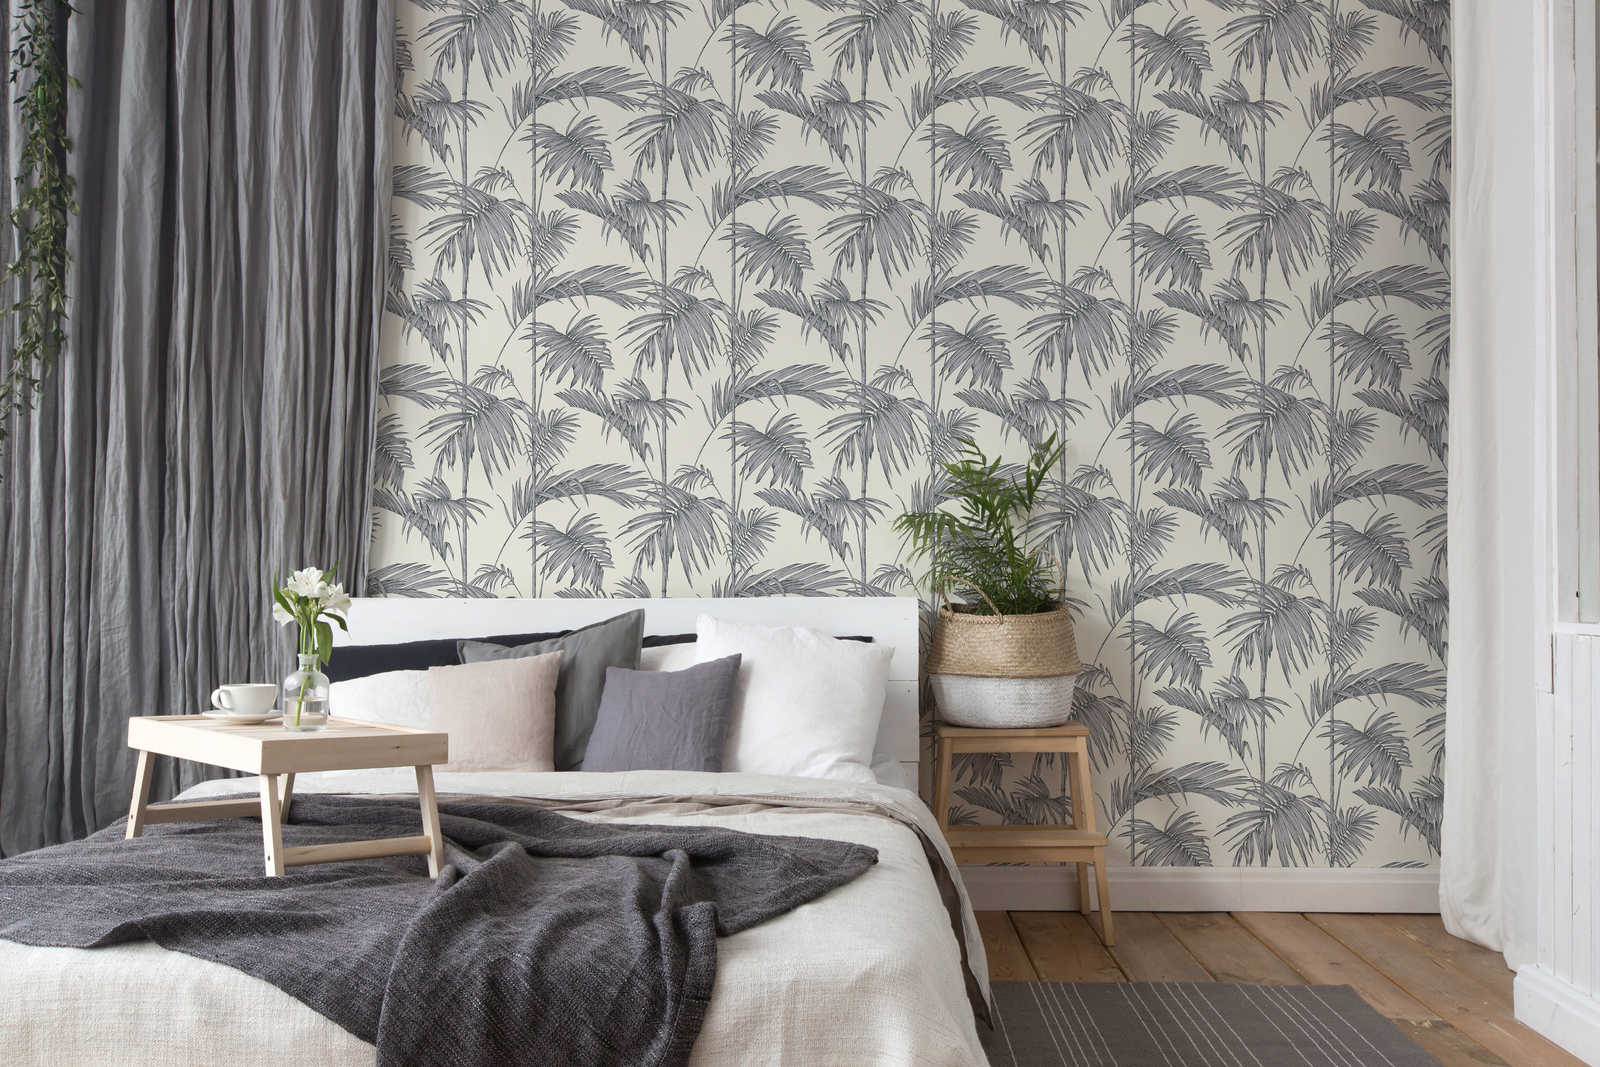             Natürliche Tapete Palmenblätter, Bambus – Grau, Silber, Weiß
        